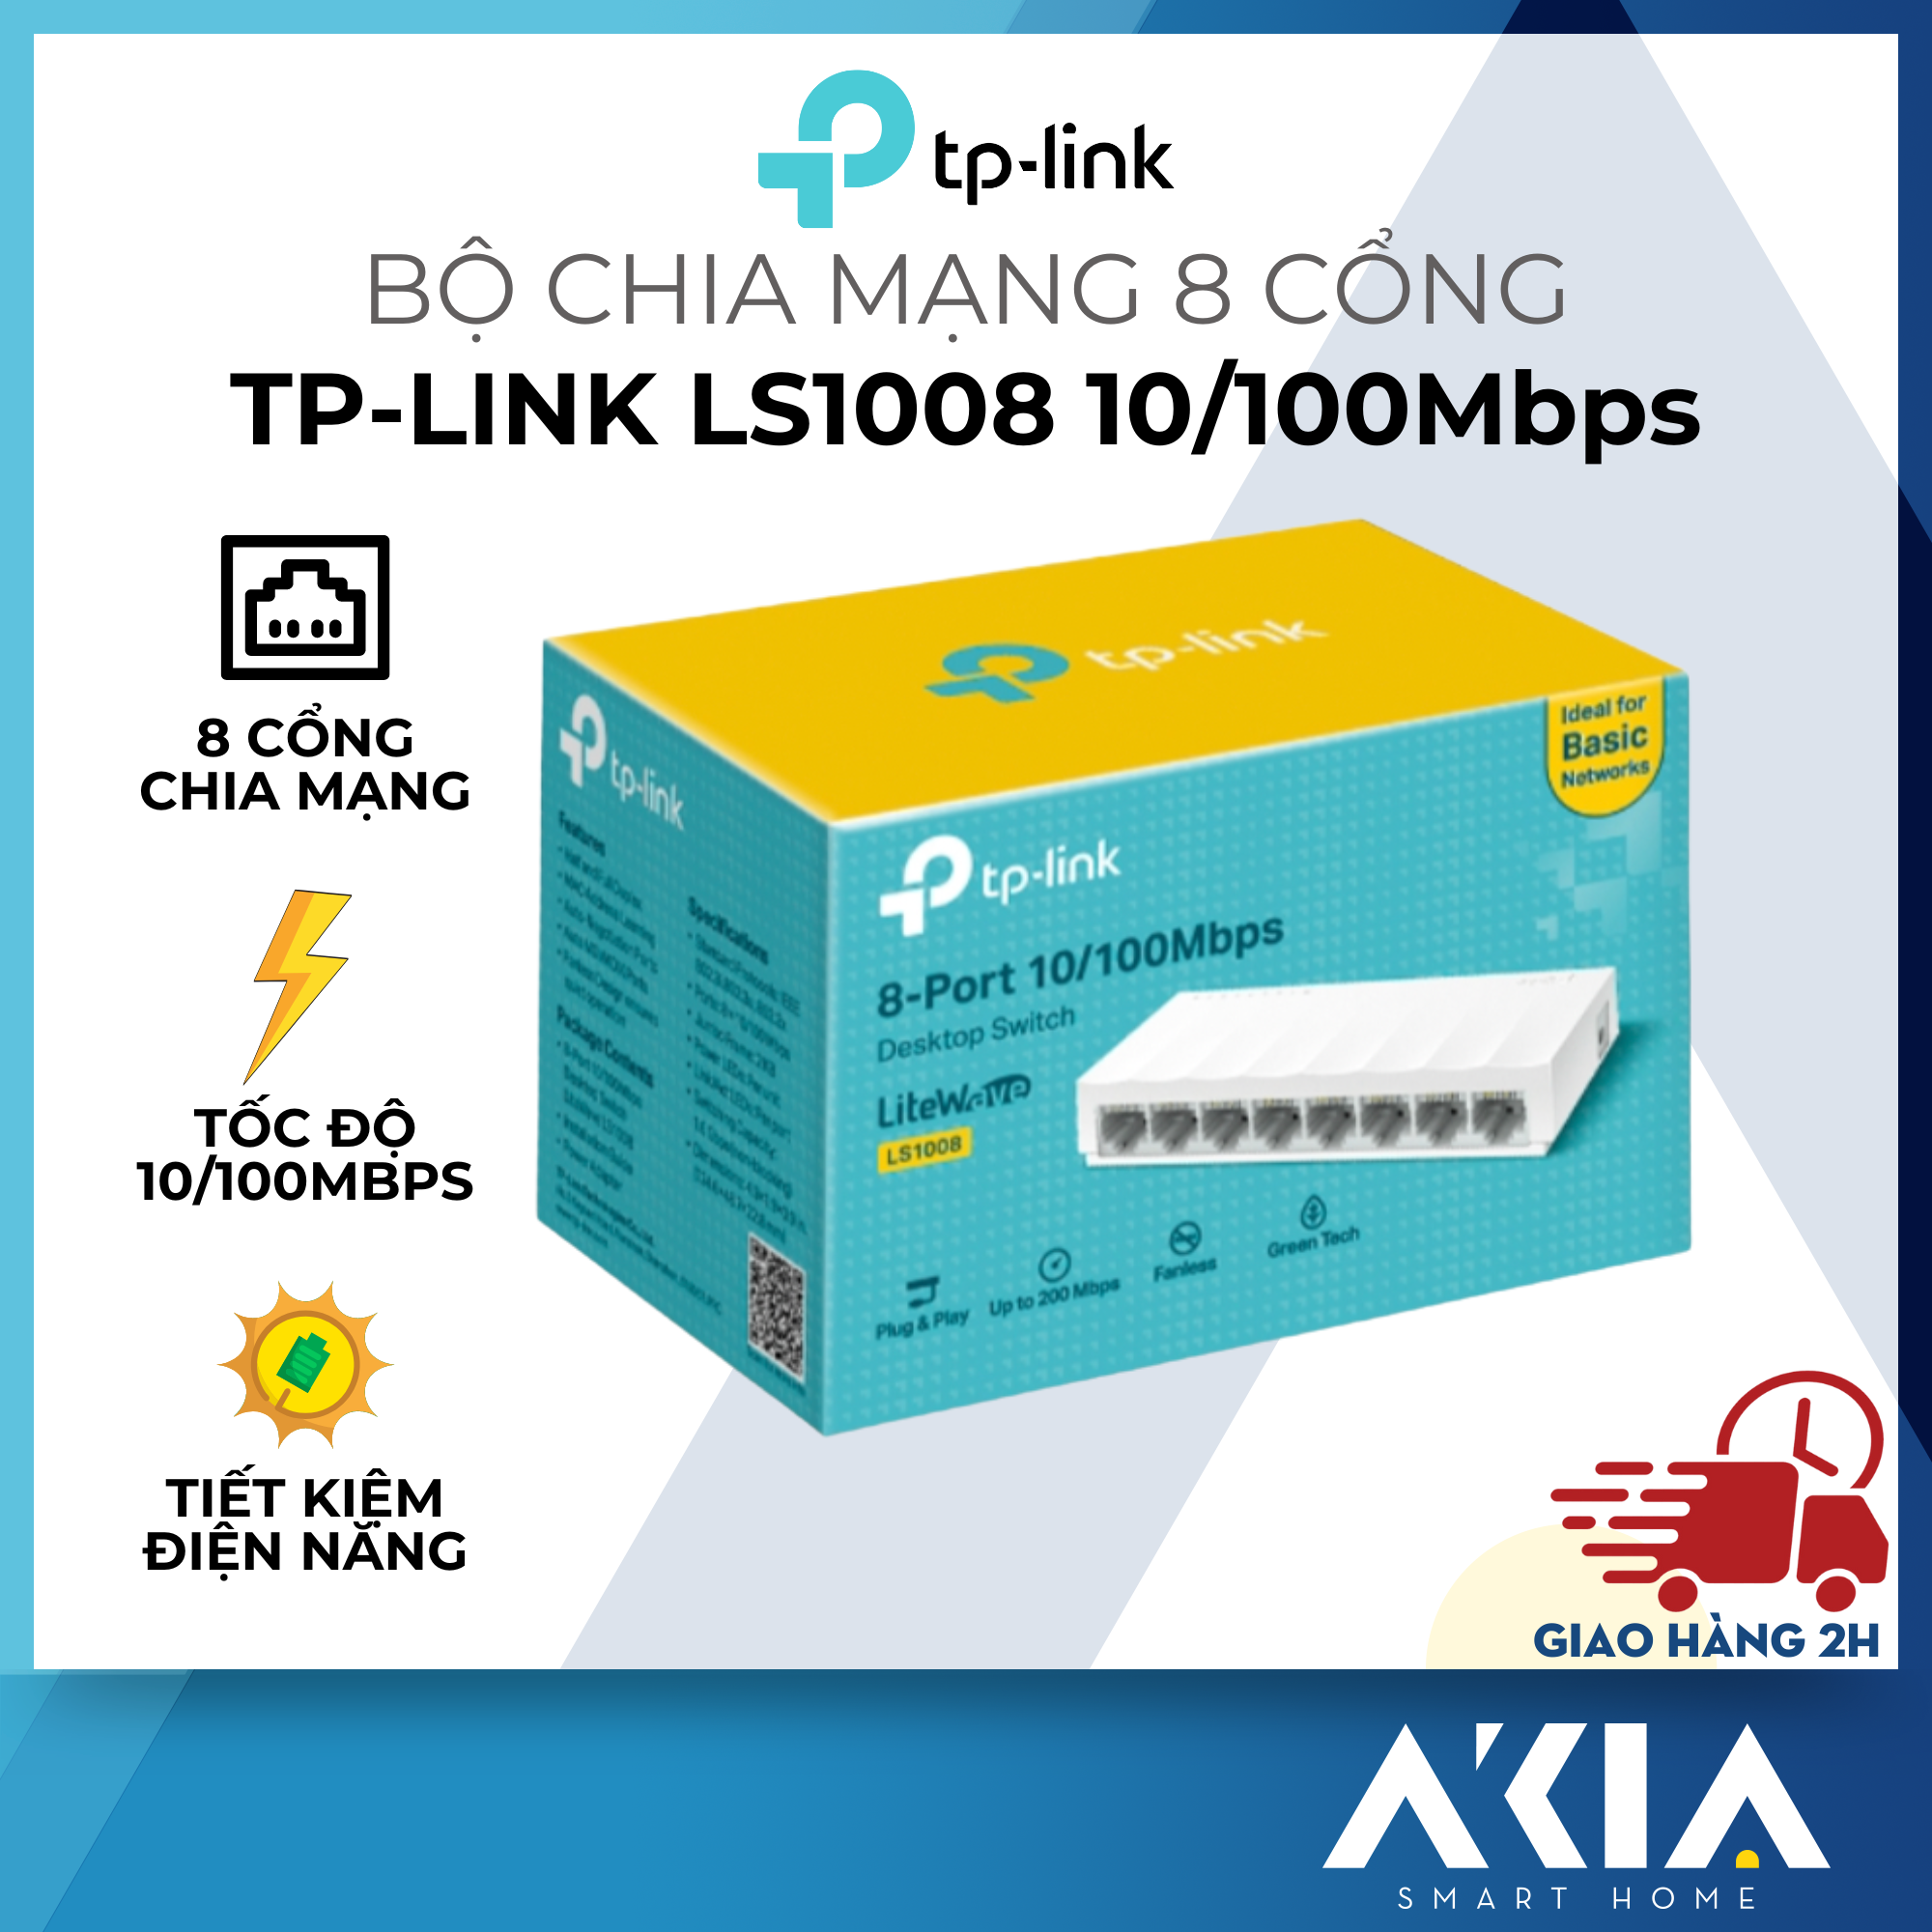 Hình ảnh TP-Link LS1008 - Bộ chia mạng 8 cổng, tiết kiệm điện năng, tốc độ cao 10/100 Mbps - Hàng chính hãng